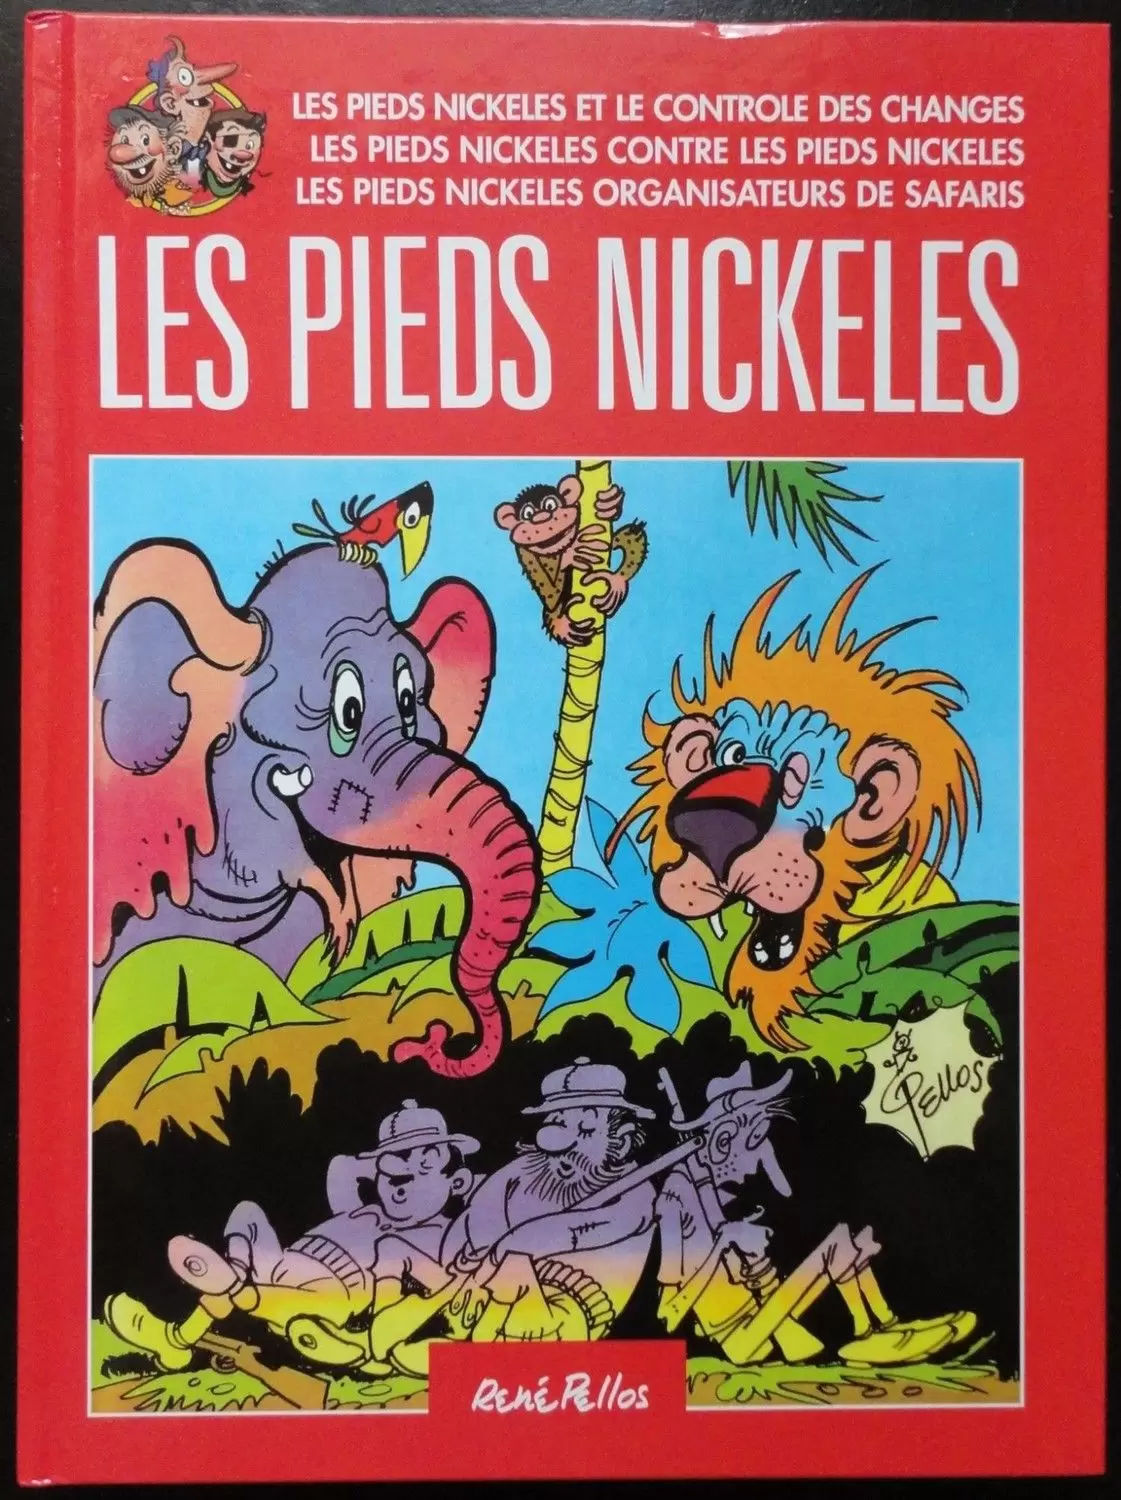 Les Pieds Nickelés - France Loisirs - Les Pieds Nickelés et le contrôle des changes / Les Pieds Nickelés contre les pieds nickelés / Les Pieds Nickelés organisateurs de safari